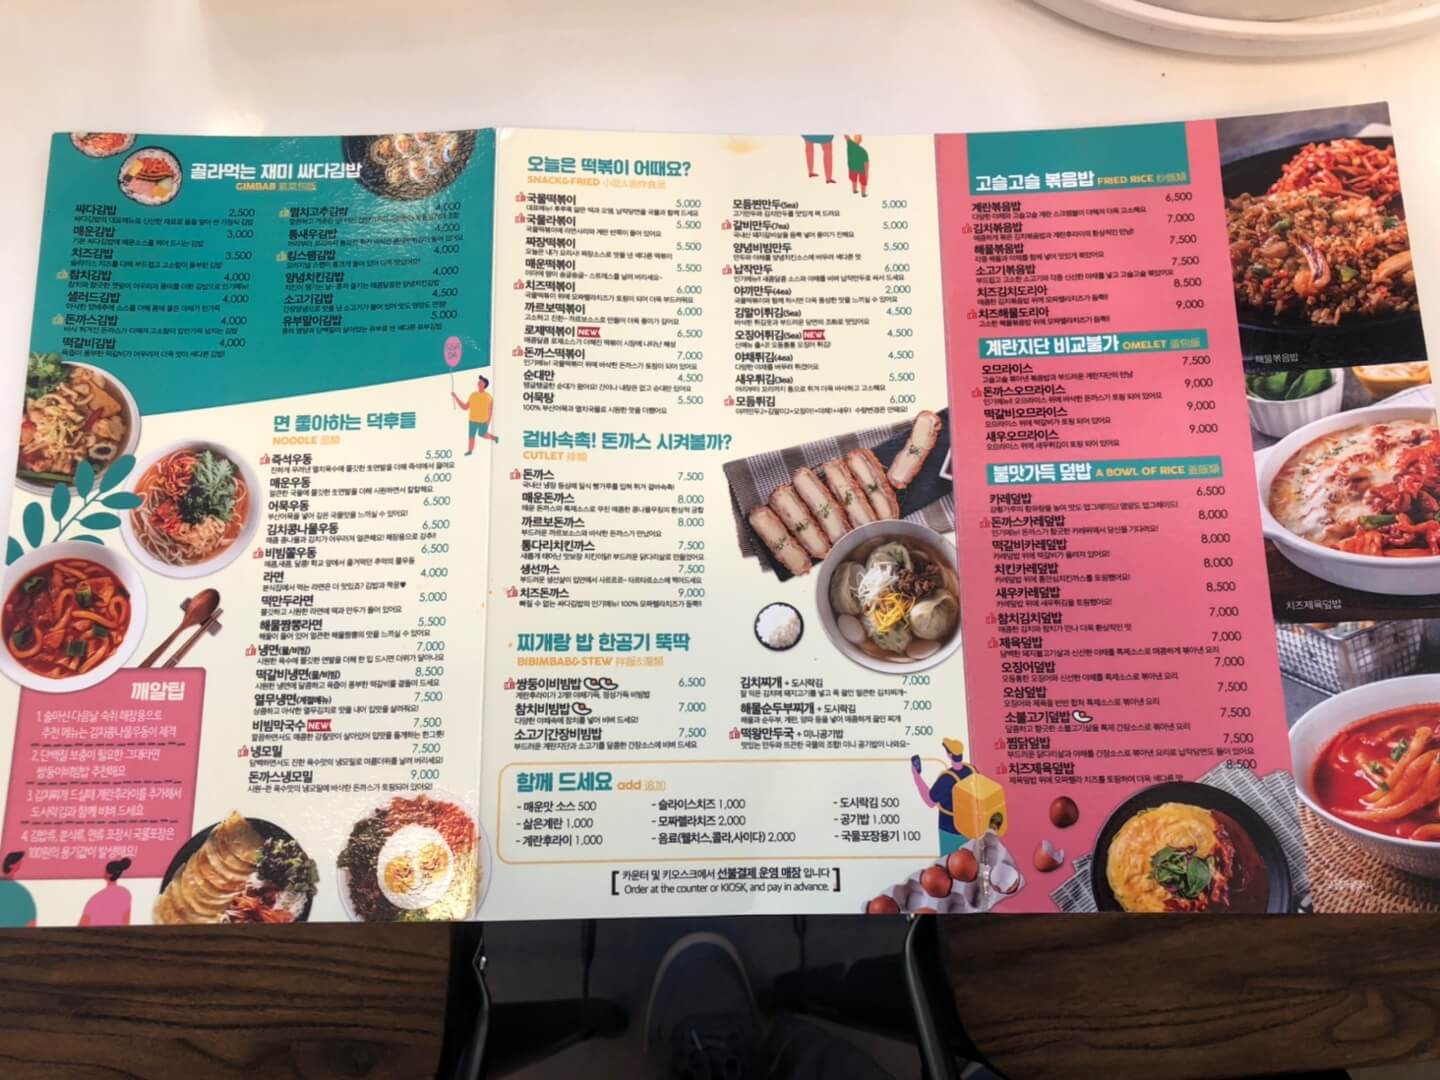 싸다김밥 메뉴판